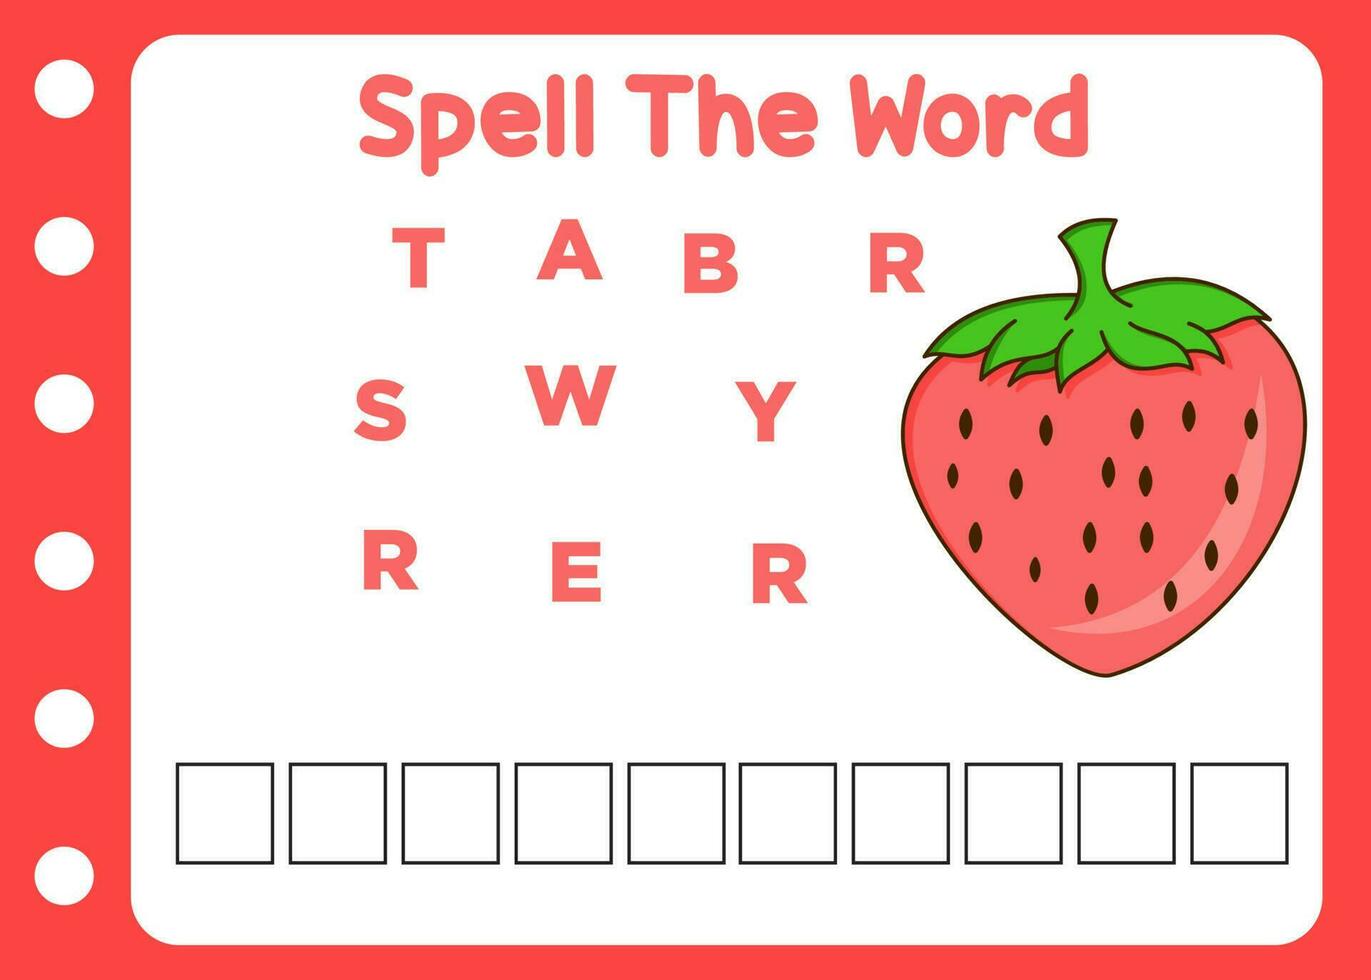 buchstabieren das Wort von Erdbeere. Kinder lernen zu buchstabieren vektor